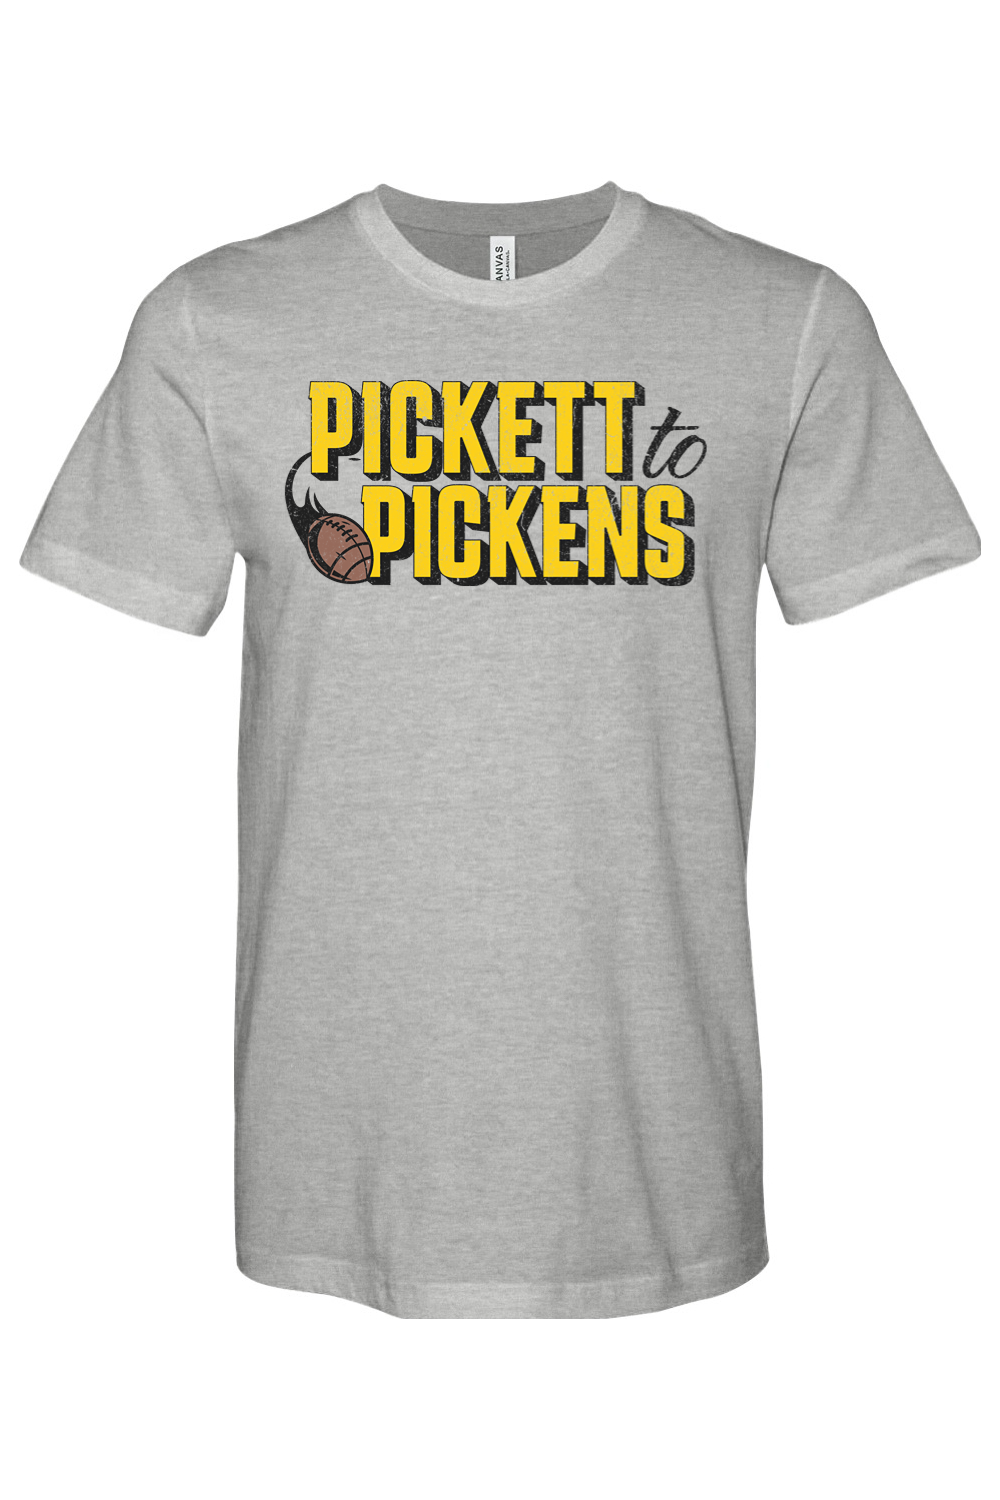 Pickett to Pickens - Yinzylvania